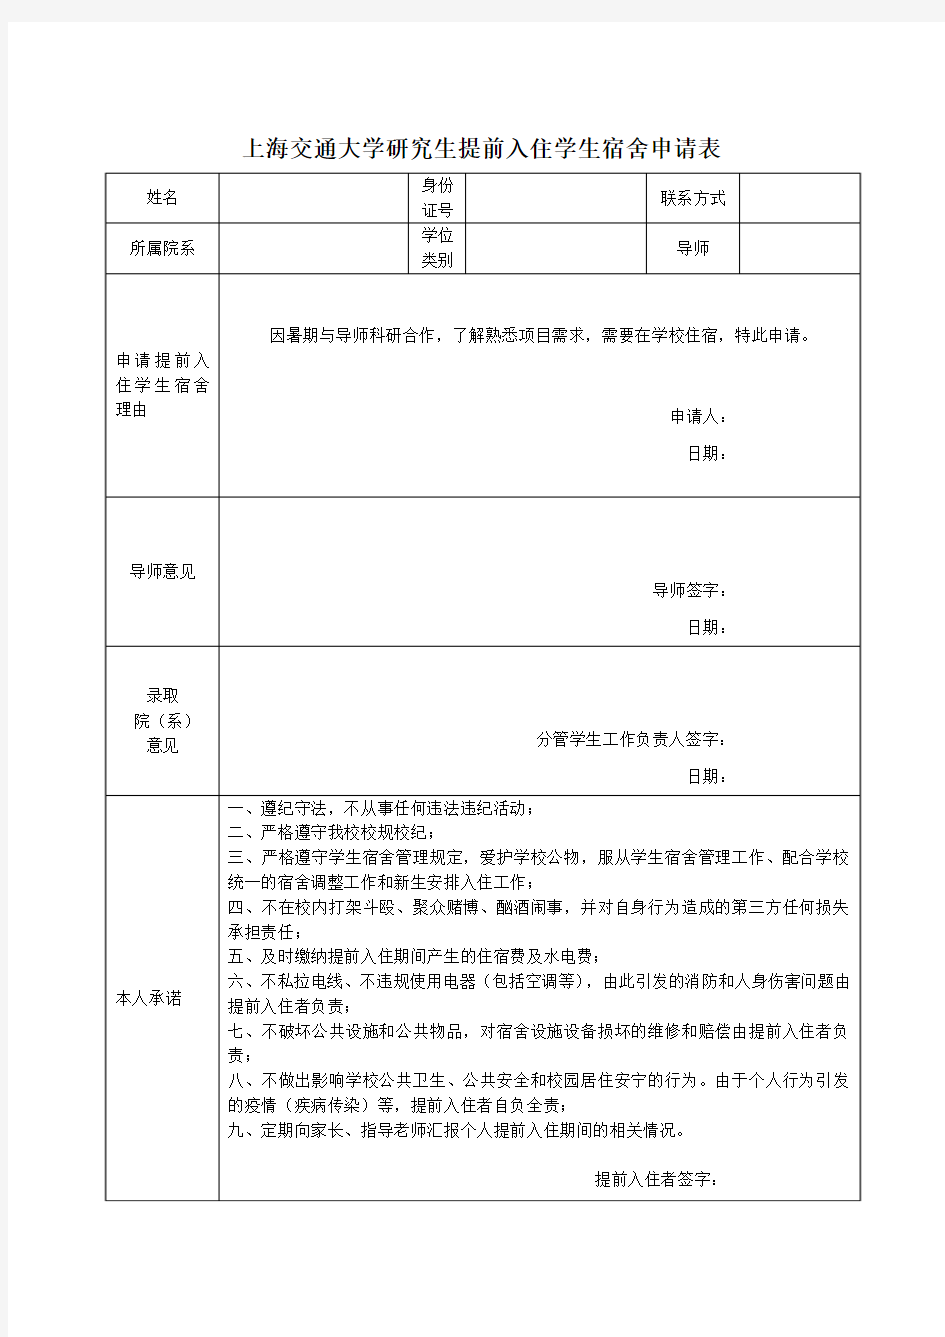 上海交通大学硕士生提前入住学生宿舍申请表